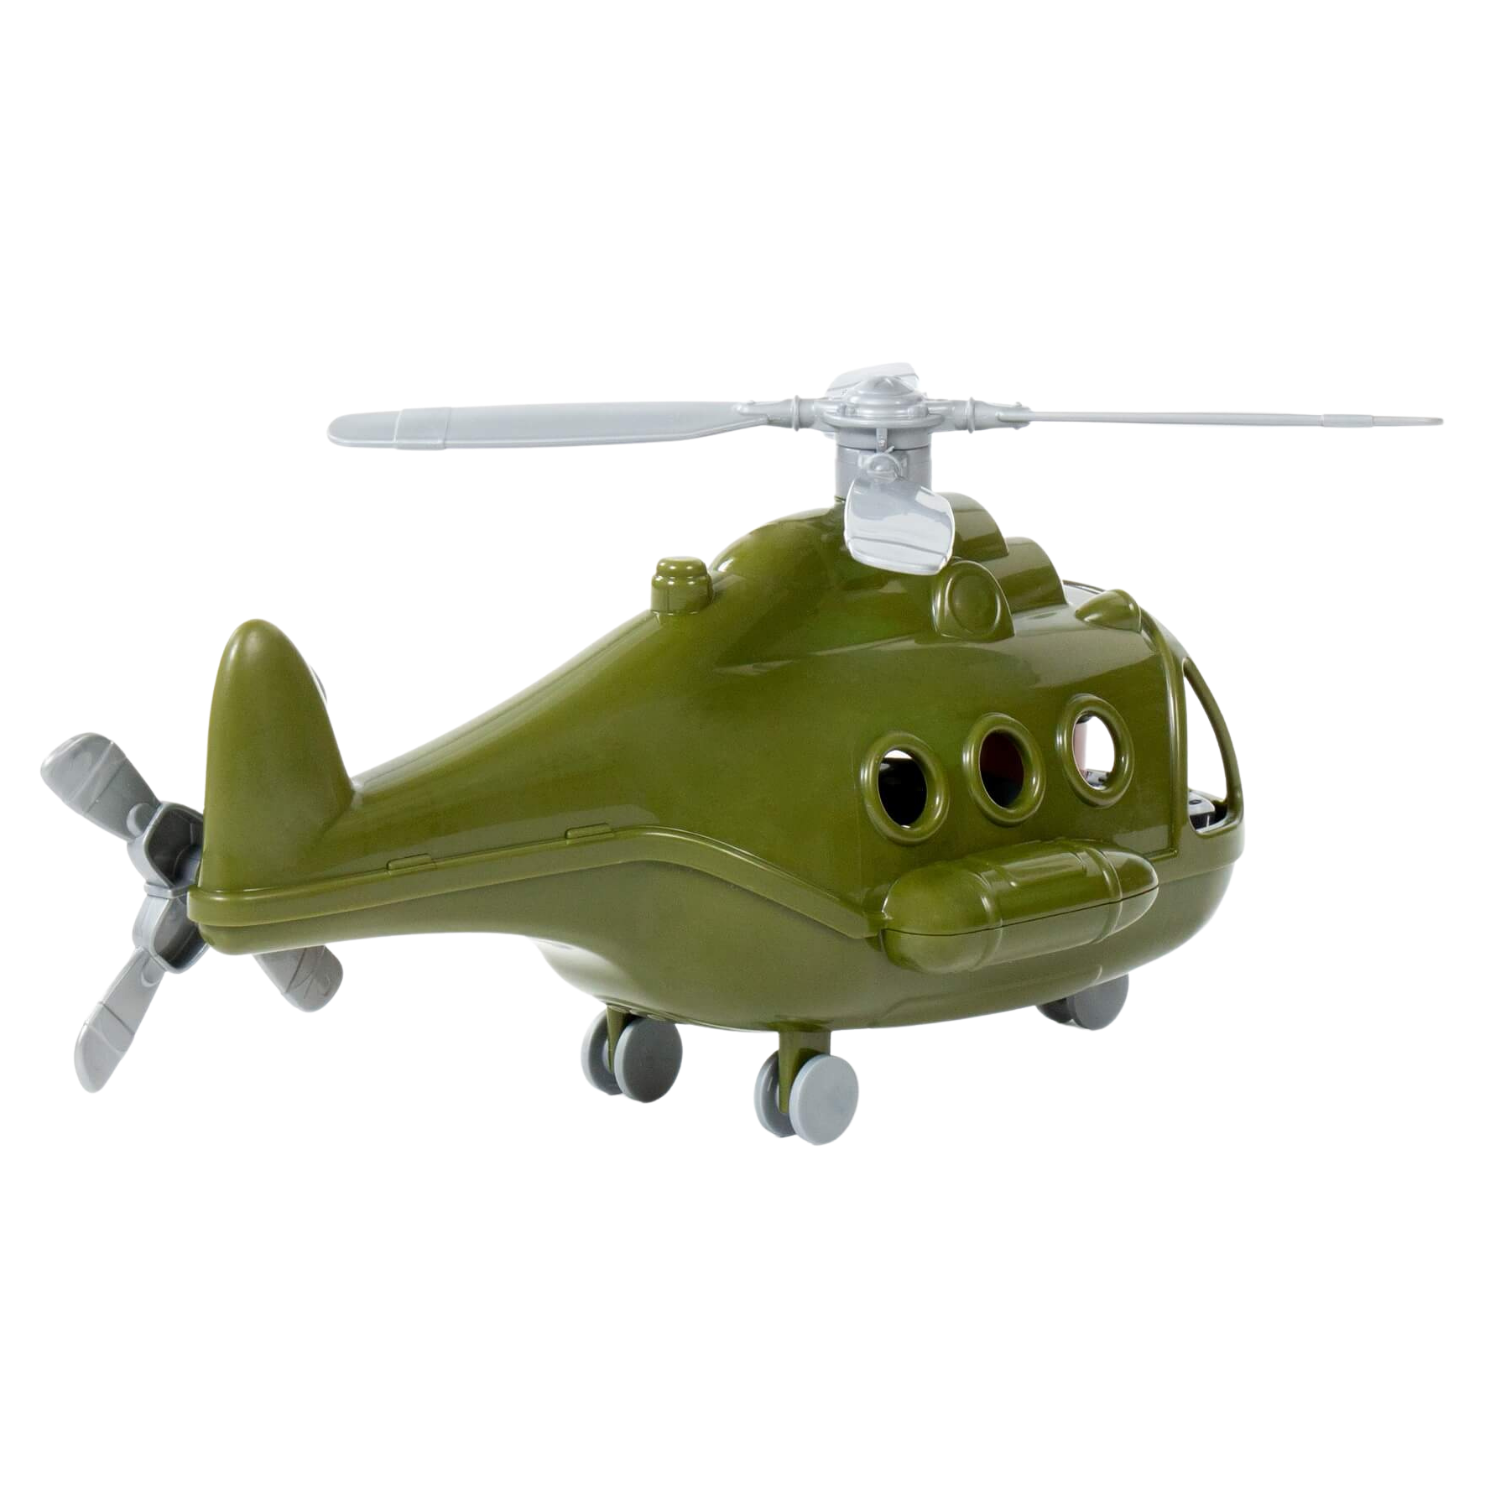 Претензия о возврате денег за некачественный товар - игрушка (вертолет)